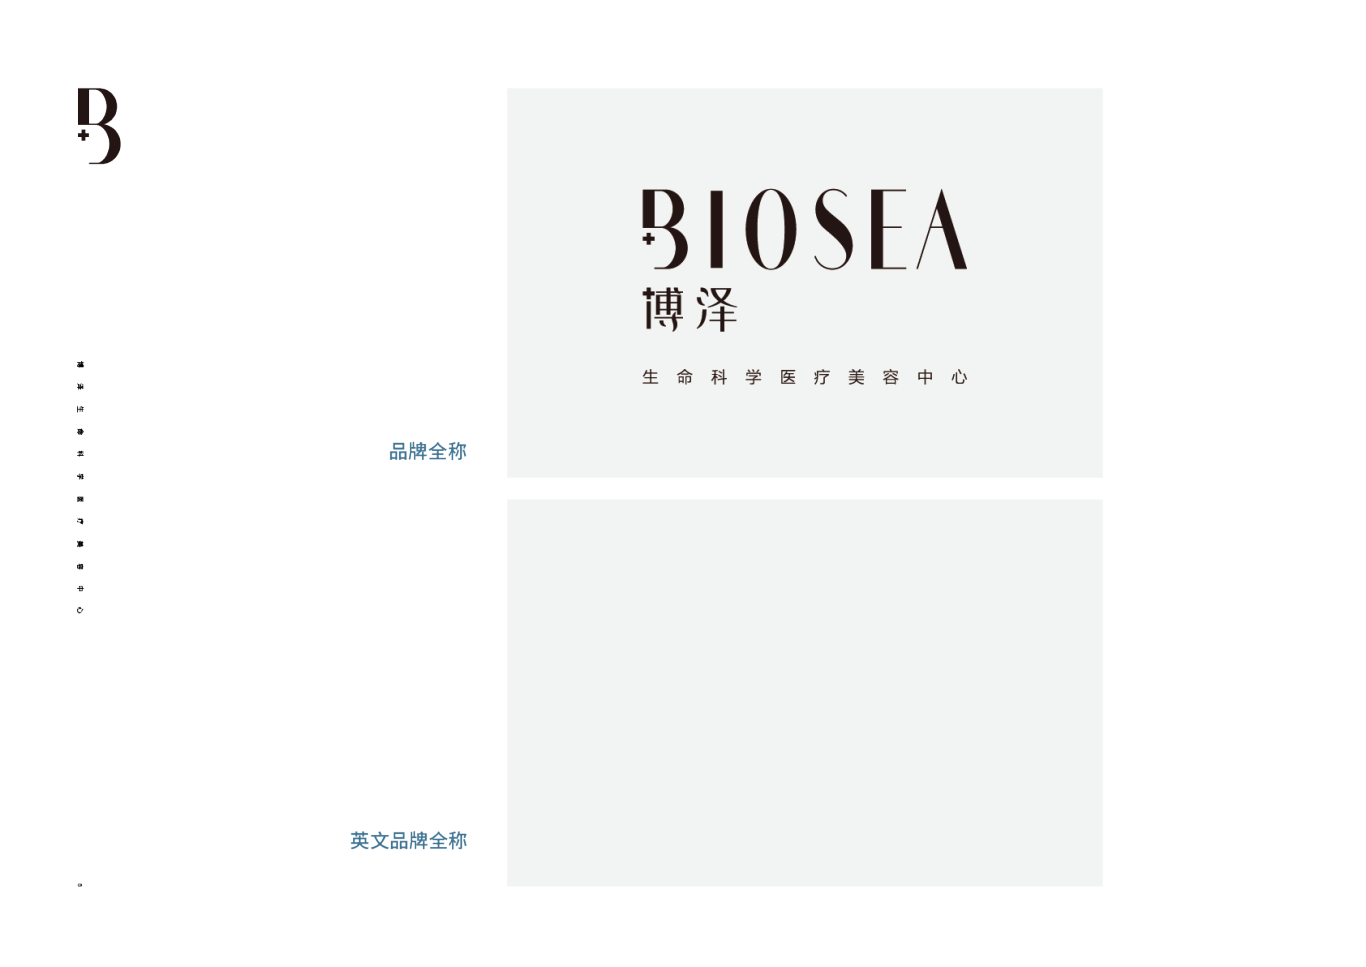 Biosea-博泽图7